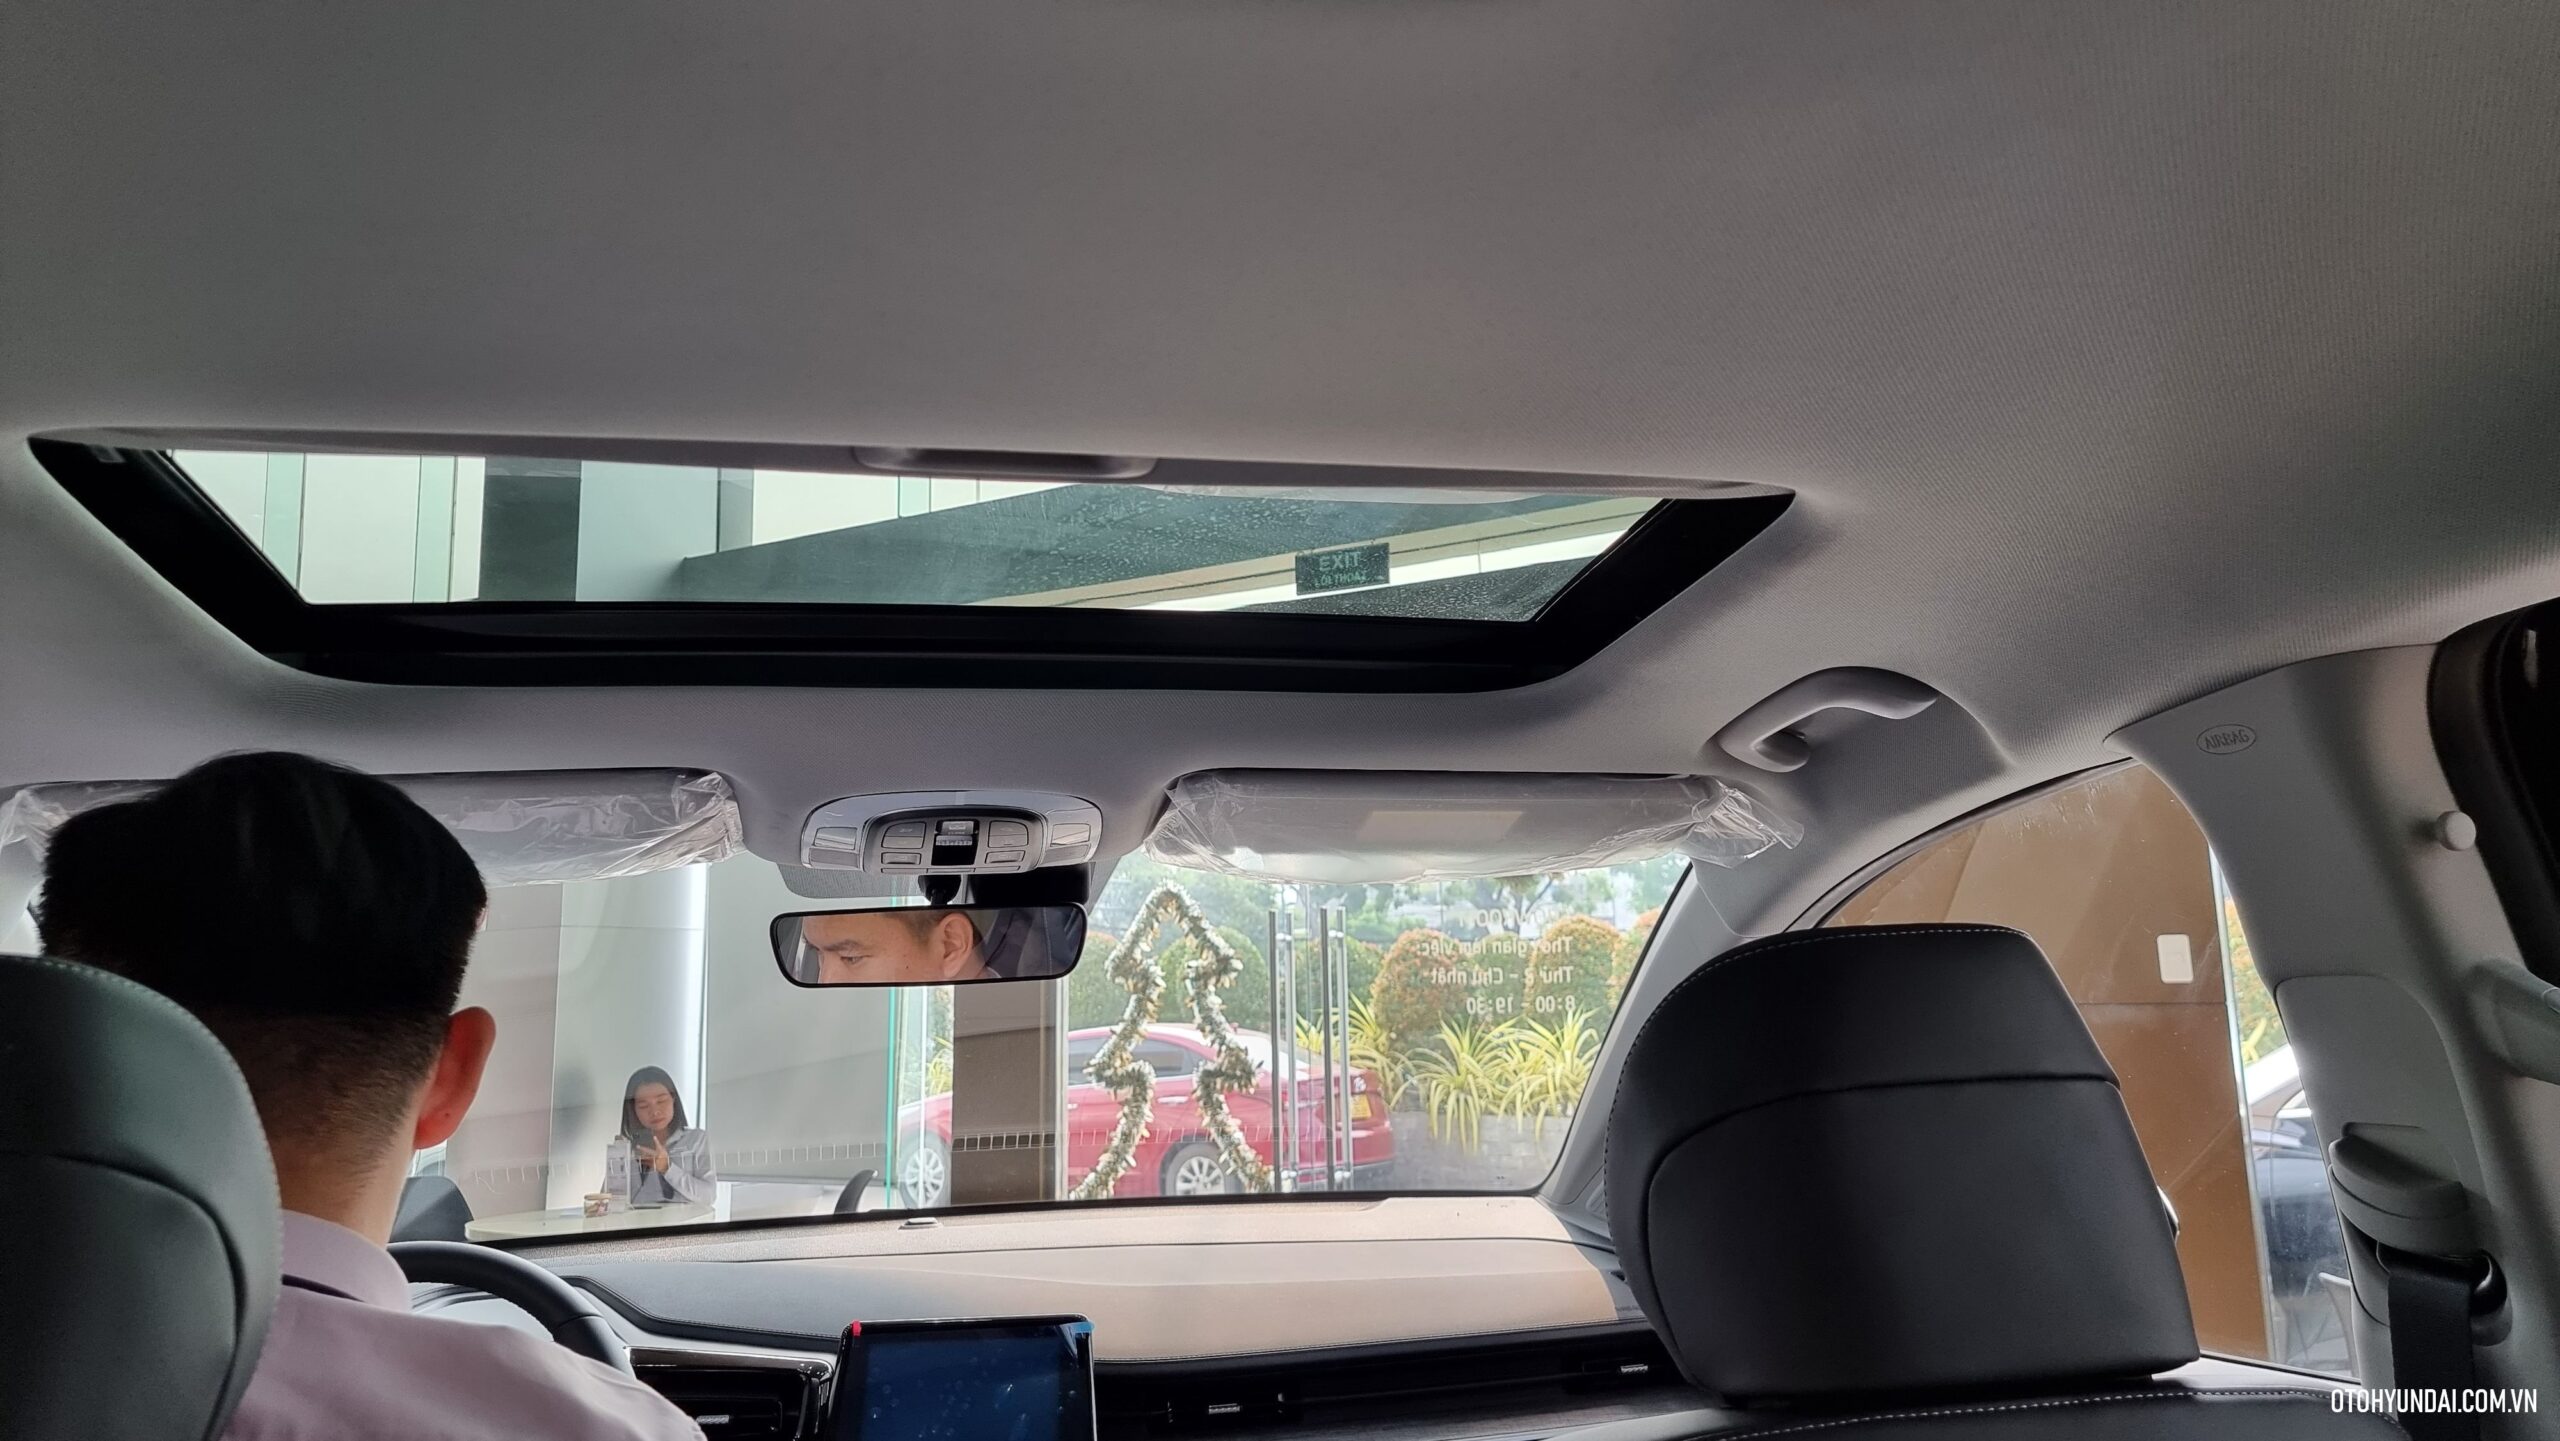 Hyundai Custin | Hyundai Custin 2024 điểm nhấn bởi việc trang bị một cửa sổ trời toàn cảnh, tạo cảm giác thoải mái và mở cửa sổ rộng rãi, cho phép ánh nắng tự nhiên chiếu vào khoang nội thất, tạo không gian sáng thoáng và tạo thêm sự kết nối với môi trường bên ngoài.